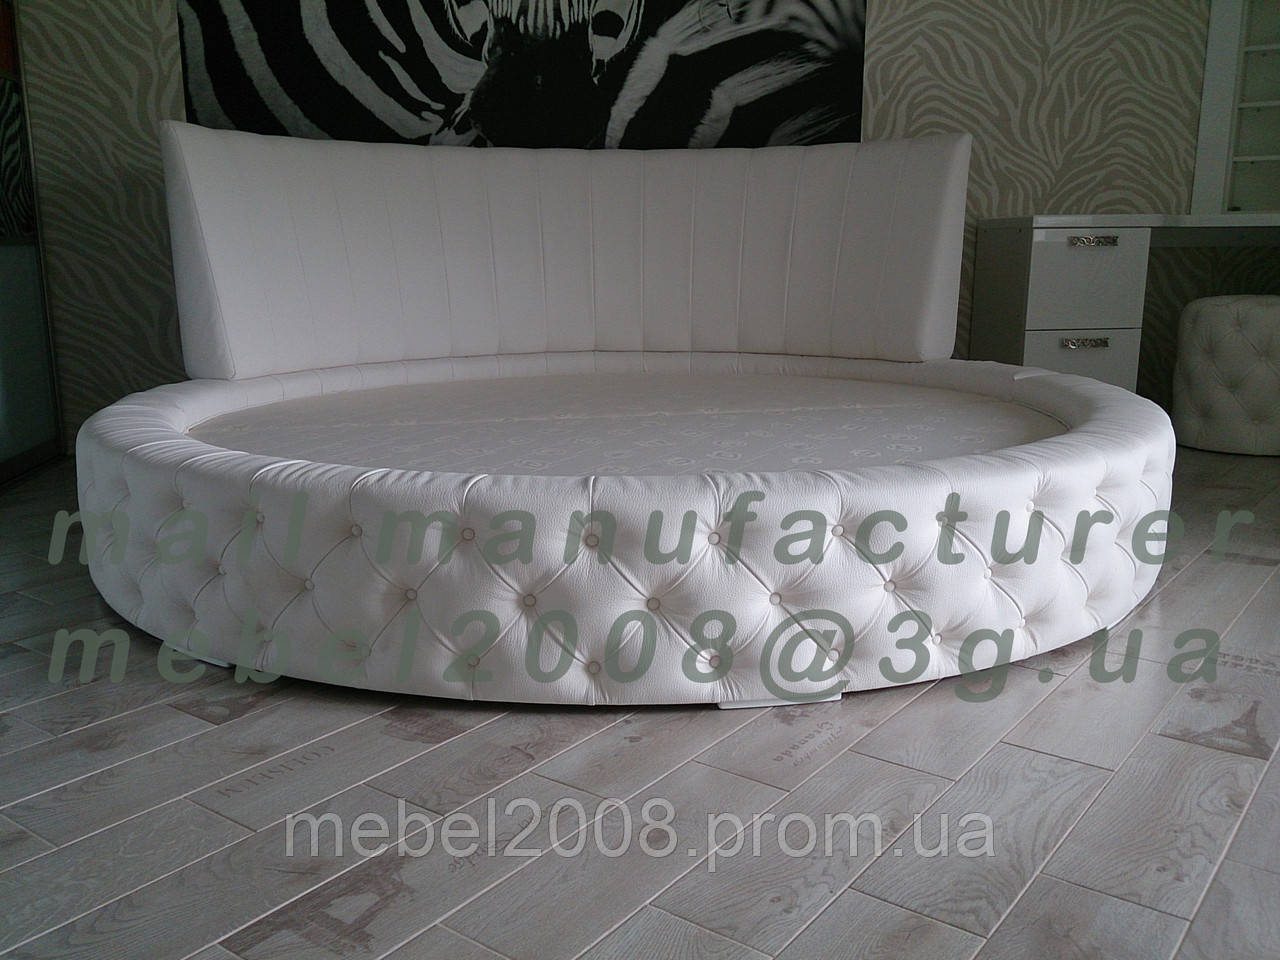 Кругле двоспальне ліжко з круглим матрацом виготовлення під замовлення